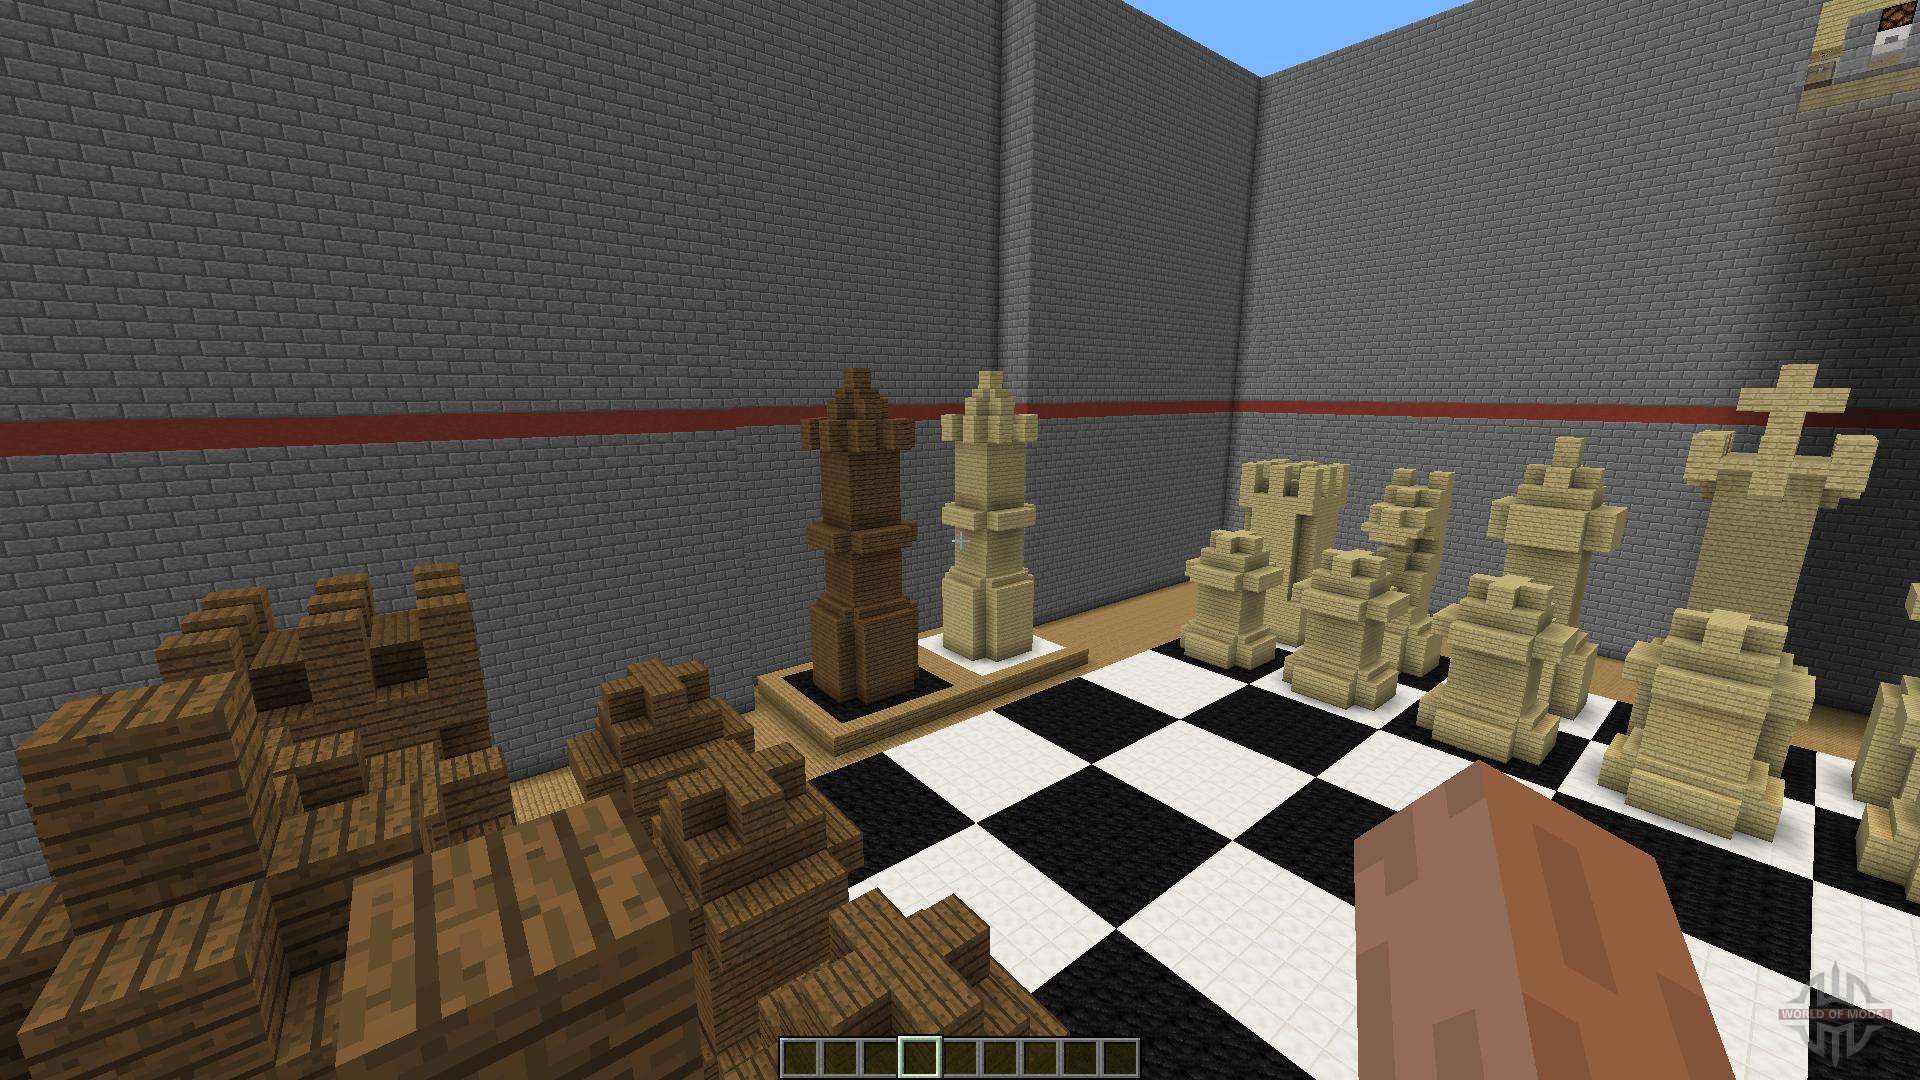 Jogo de Xadrez Minecraft - The Noble Collection - Objecto derivado